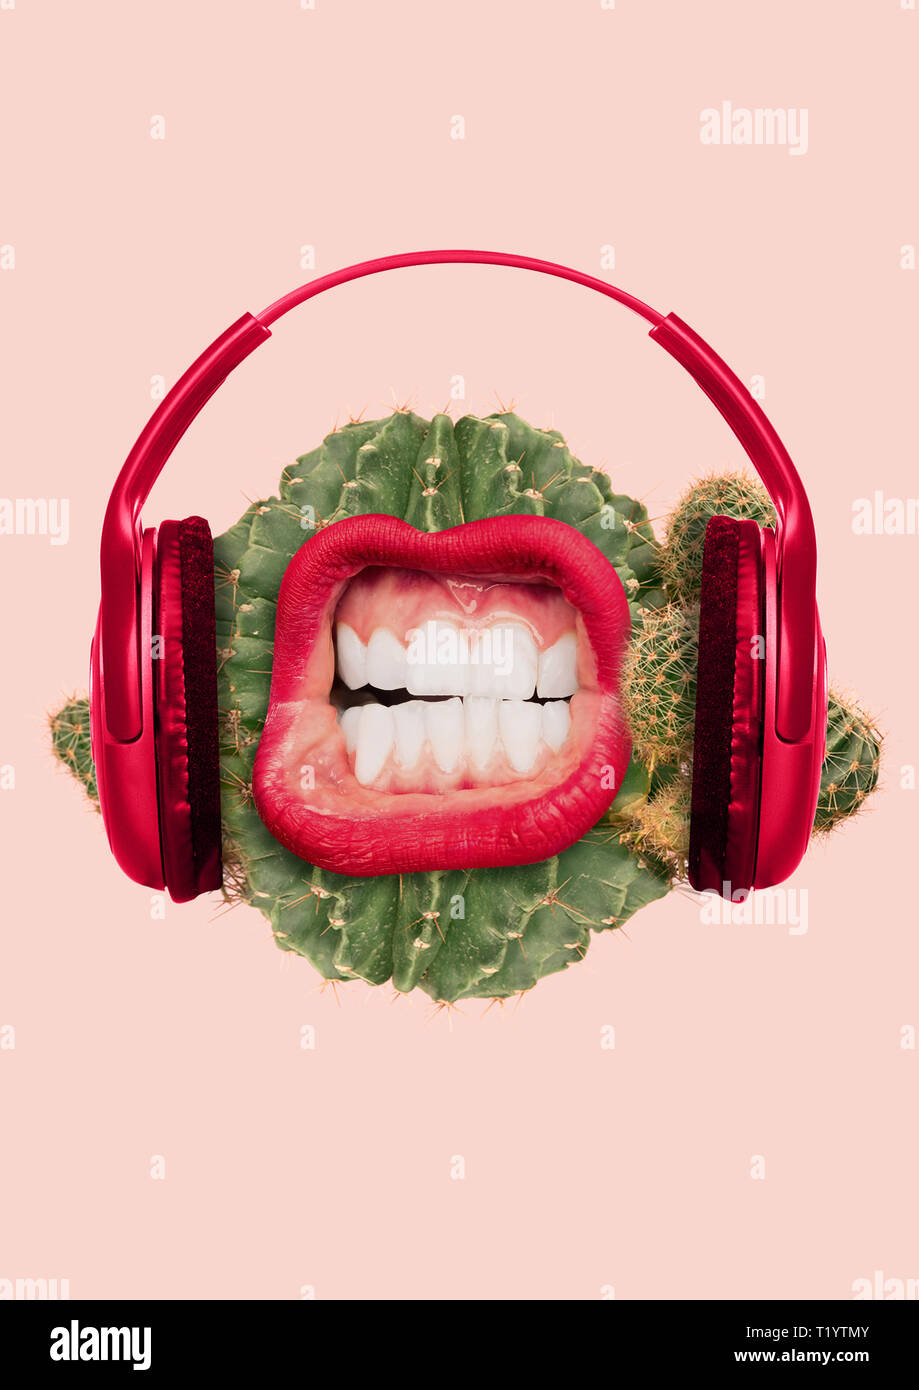 Le figuier de son. N'est pas spécifique de la musique étrange goût. Cactus juteux vert comme une tête avec de grandes rayures meloman et craquement de la bouche, lèvres rouges et un casque. Design moderne. Collage de l'art contemporain. Banque D'Images